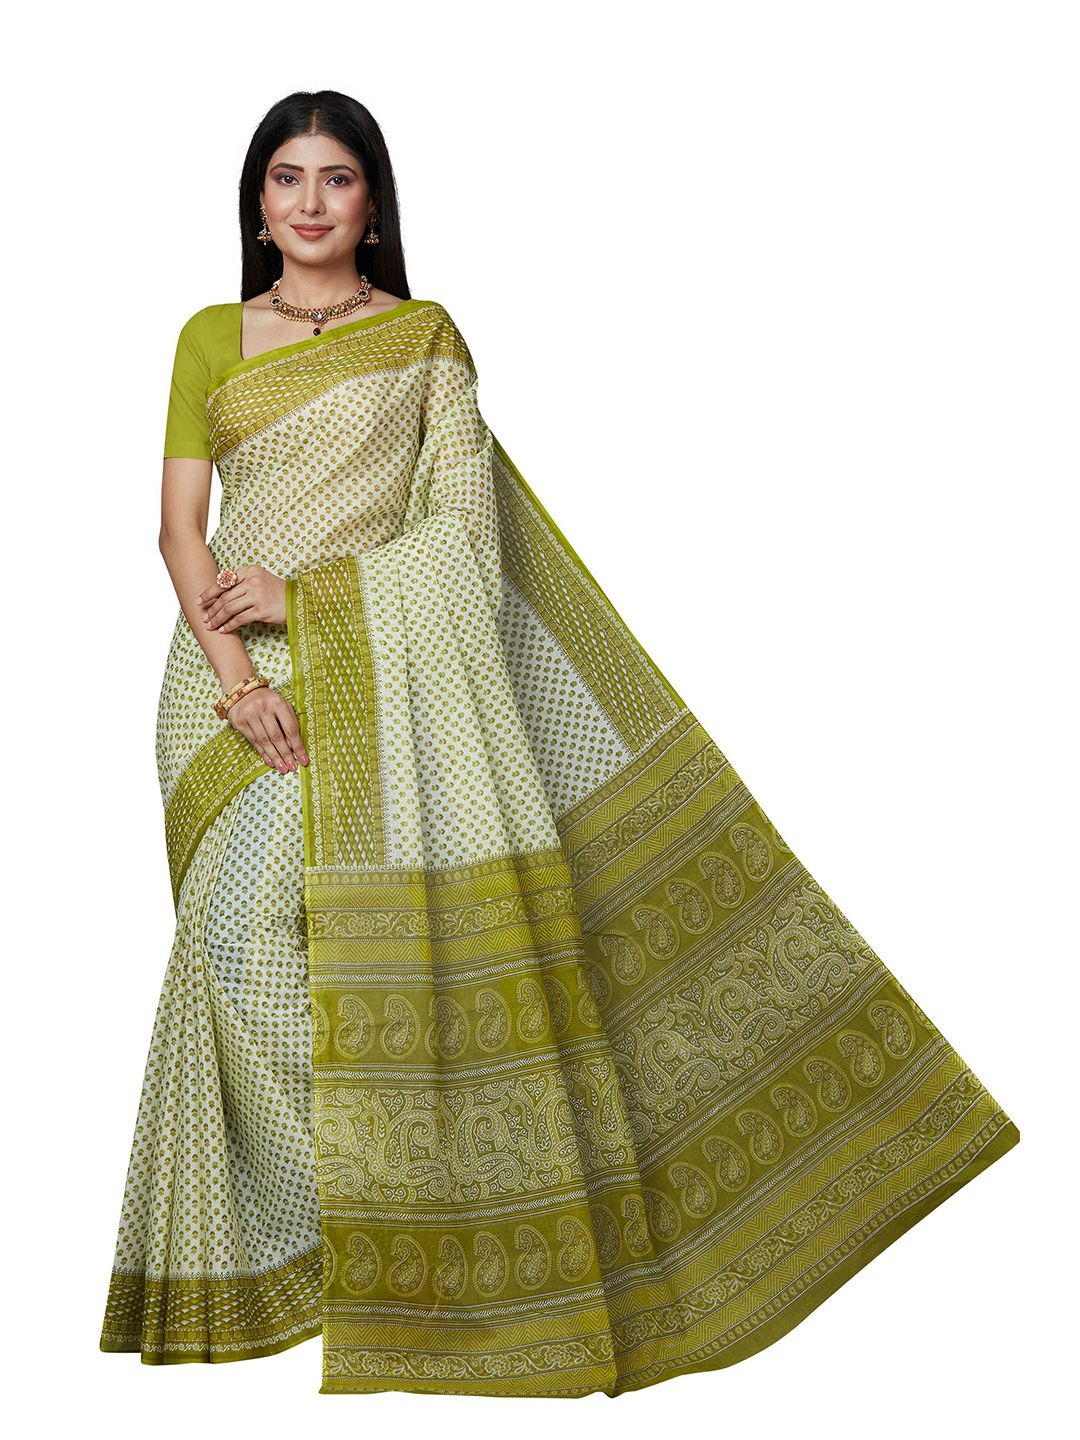 SHANVIKA Green & Cream-Coloured Floral Pure Cotton  Block Print Saree Price in India